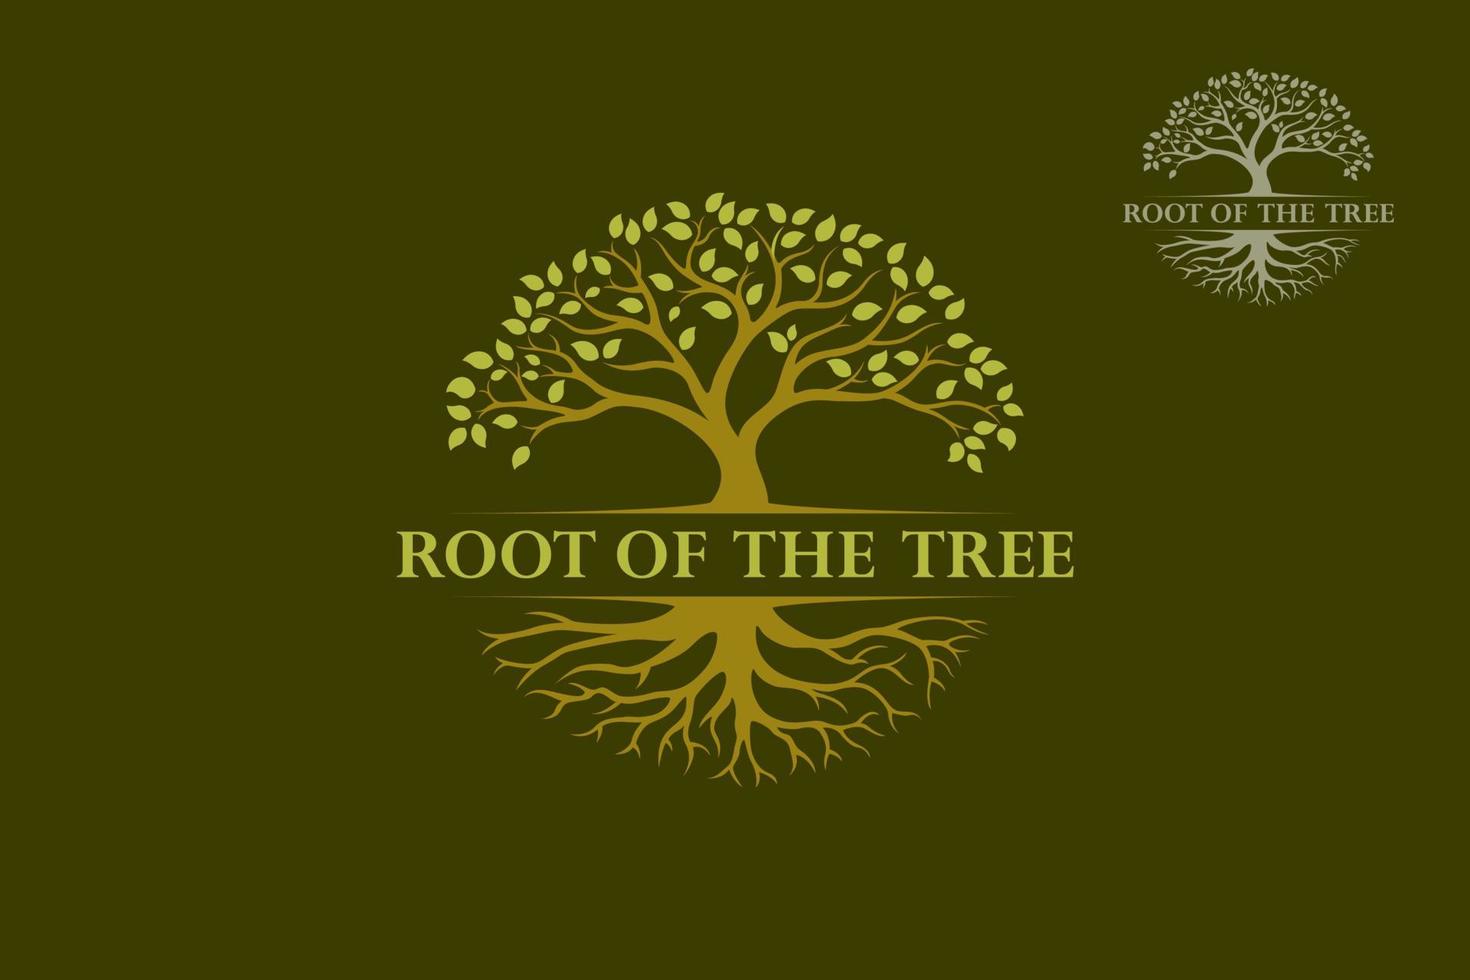 racine du modèle de logo vectoriel arbre. l'arbre est symbole de force, de longévité, de fertilité, d'espoir et de continuité. ce logo peut être utilisé par les entreprises du paysage, les hôtels, les financiers, les assurances, etc.